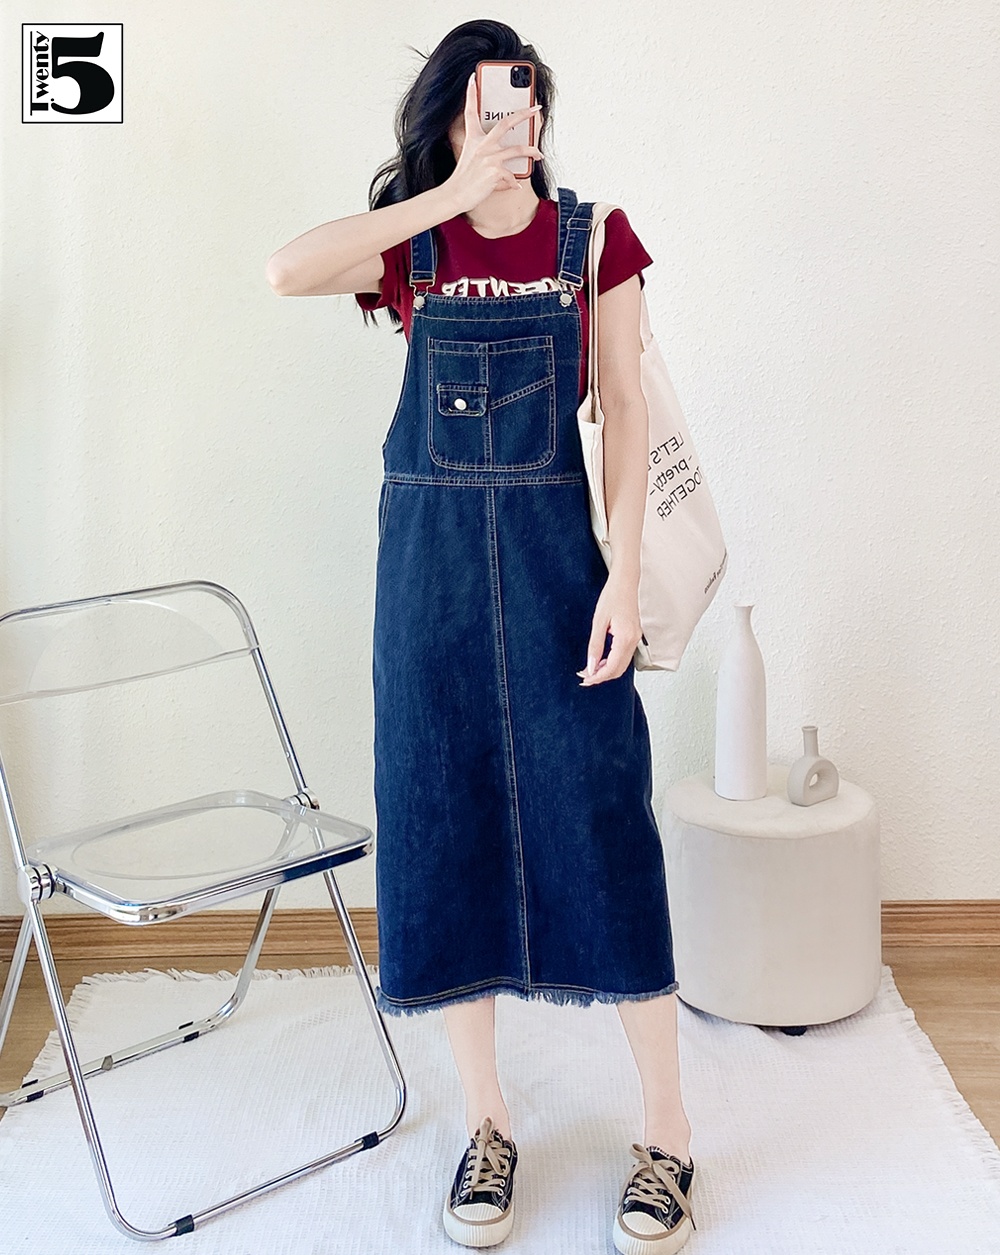 Váy Yếm Jeans JUMSUIT Nữ Logo Ngực, Yếm Bò Nữ Xẻ Tà Túi Trước Dáng Dài 2  Màu ĐEN XANH SIÊU XINH | Lazada.vn